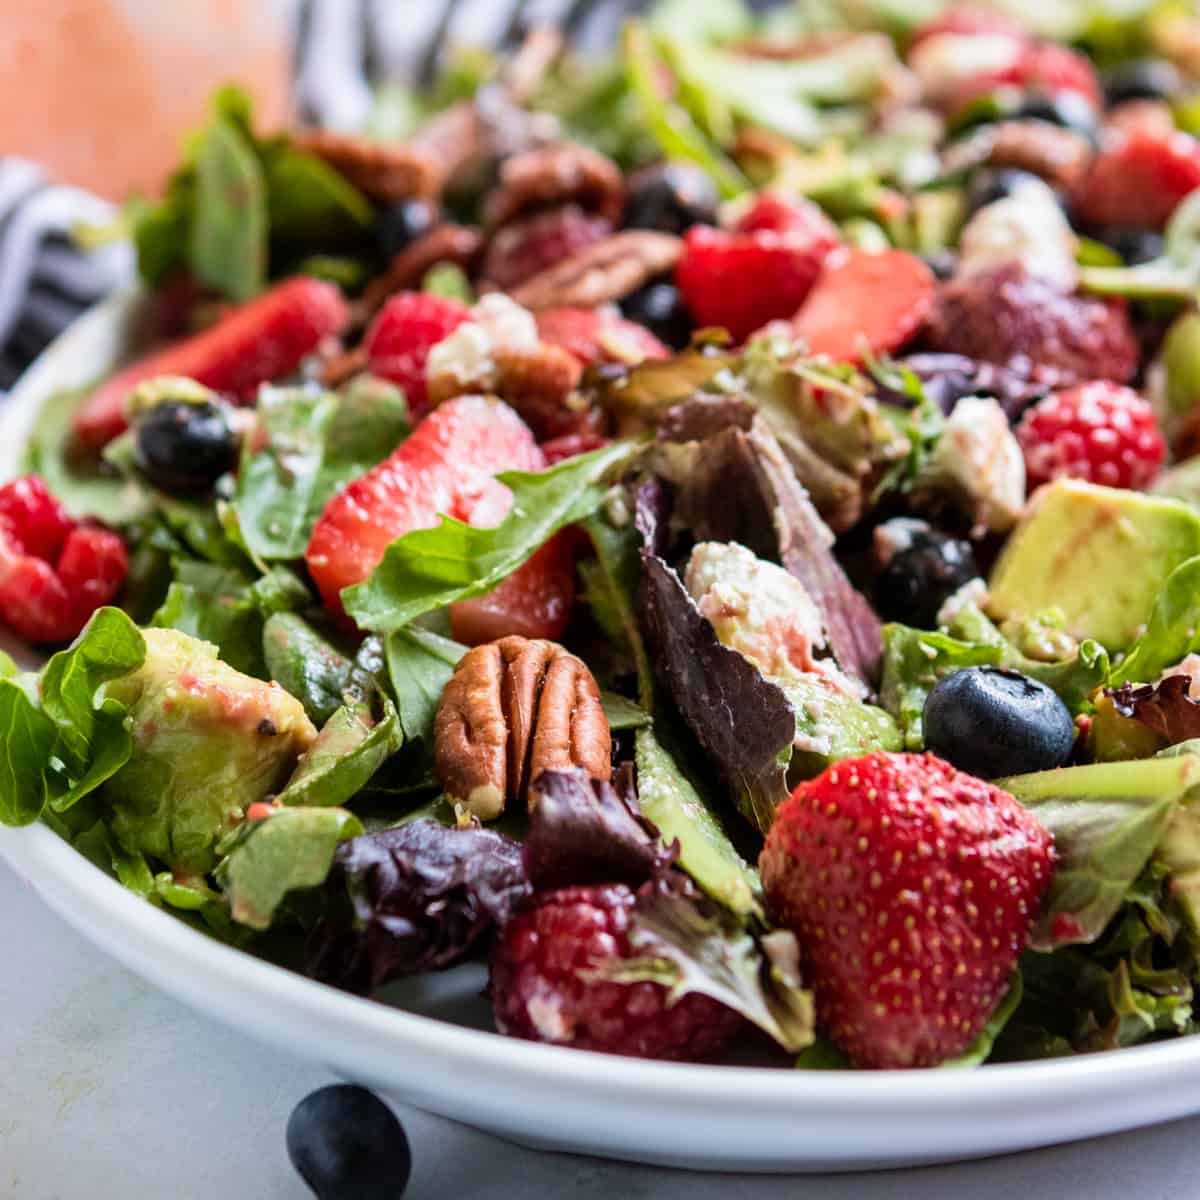 https://lemonsandzest.com/wp-content/uploads/2020/07/Mixed-Green-Salad-with-Berries-22.jpg